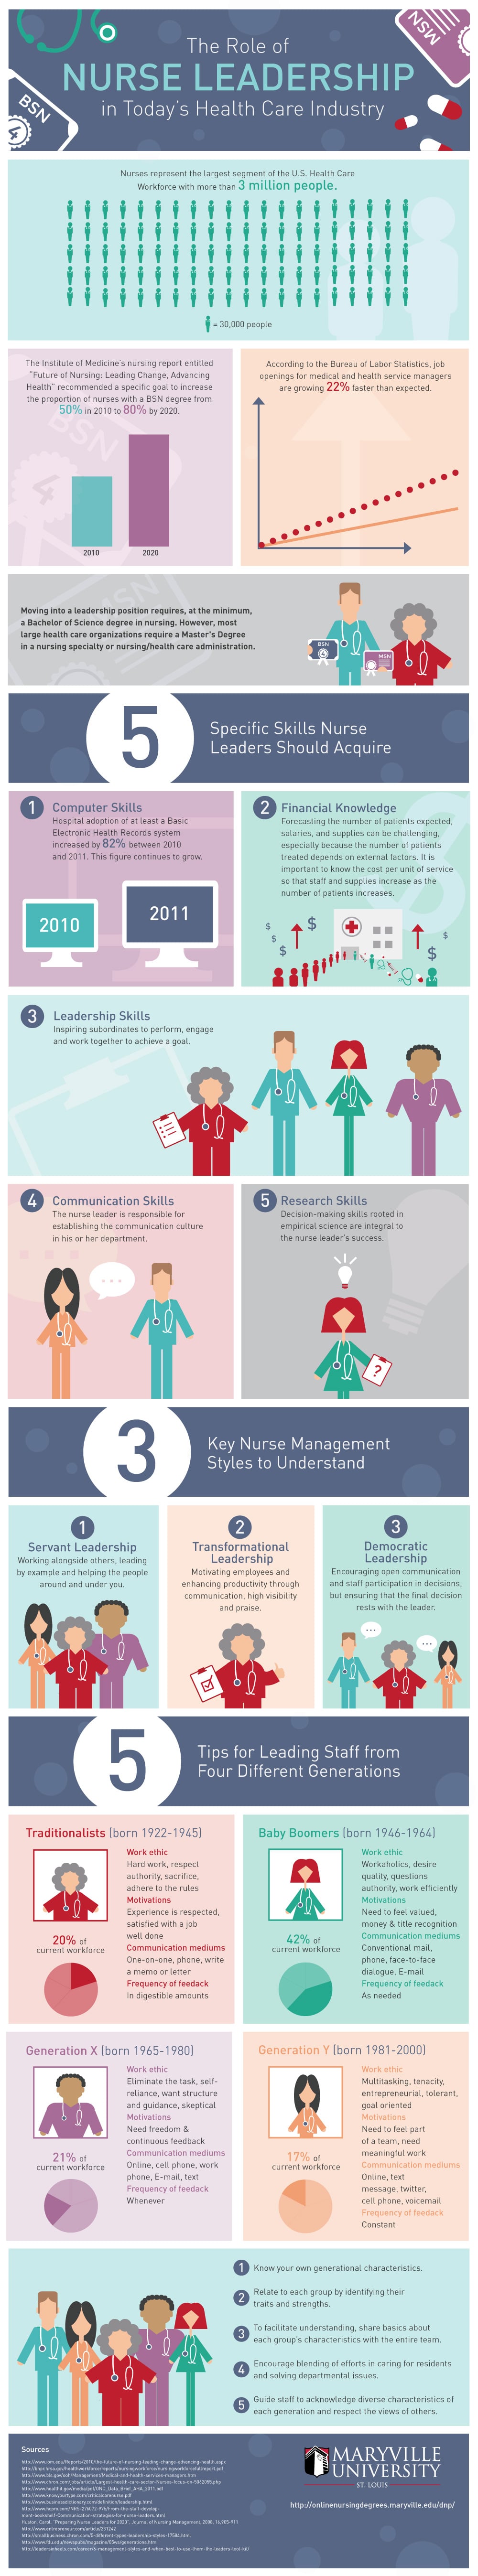 El papel del liderazgo enfermero en el sector sanitario actual